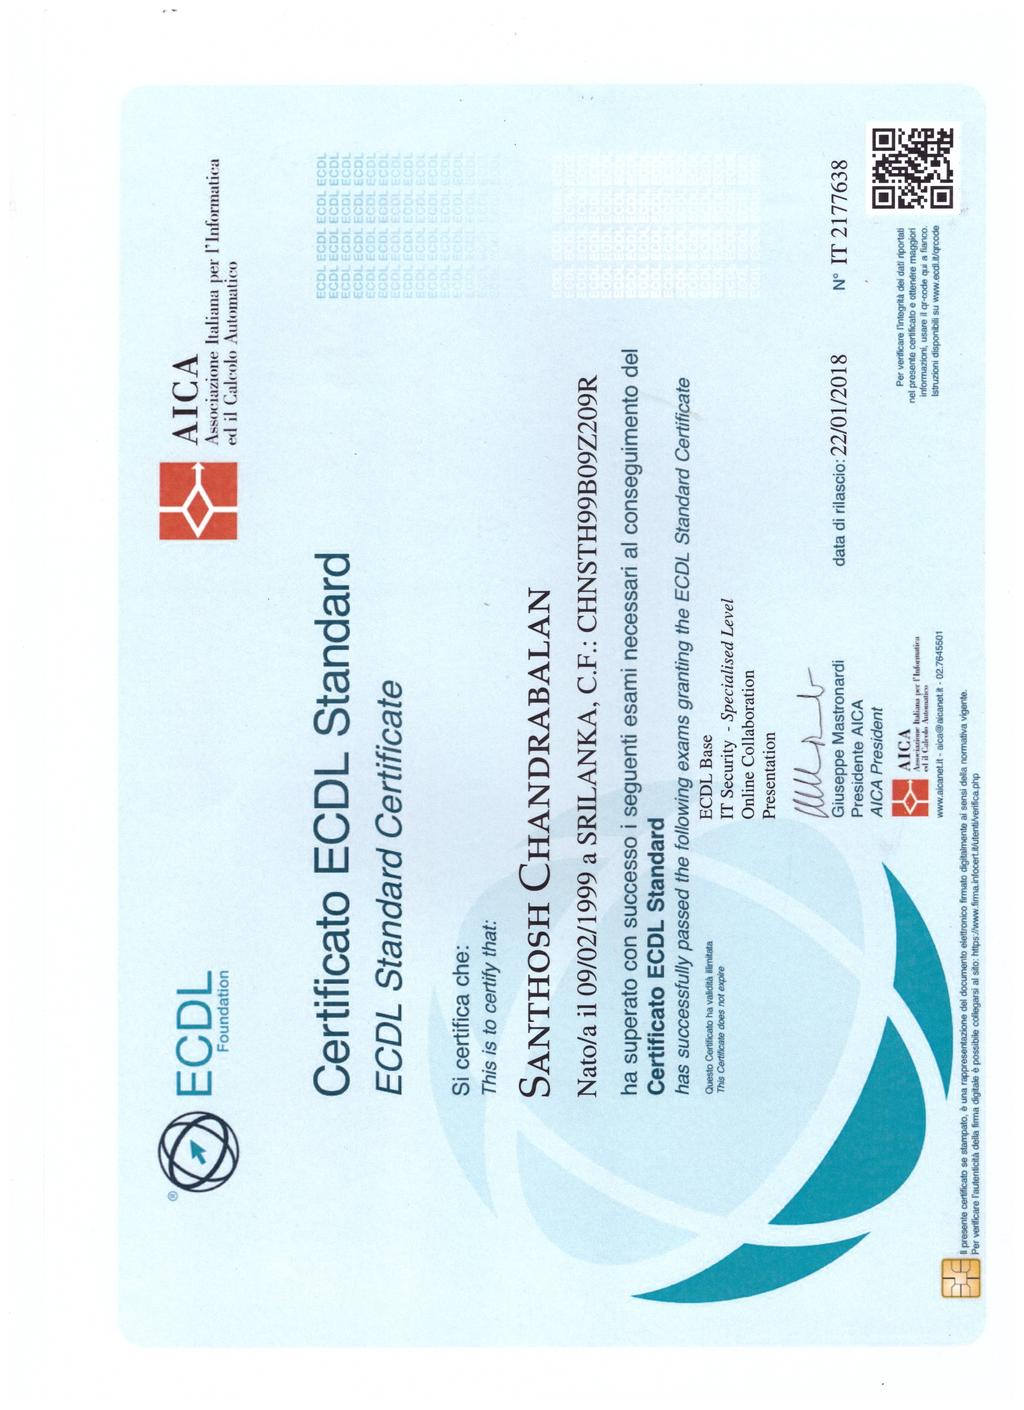 Passaporto europeo delle competenze Certificato di Ecdl Full.